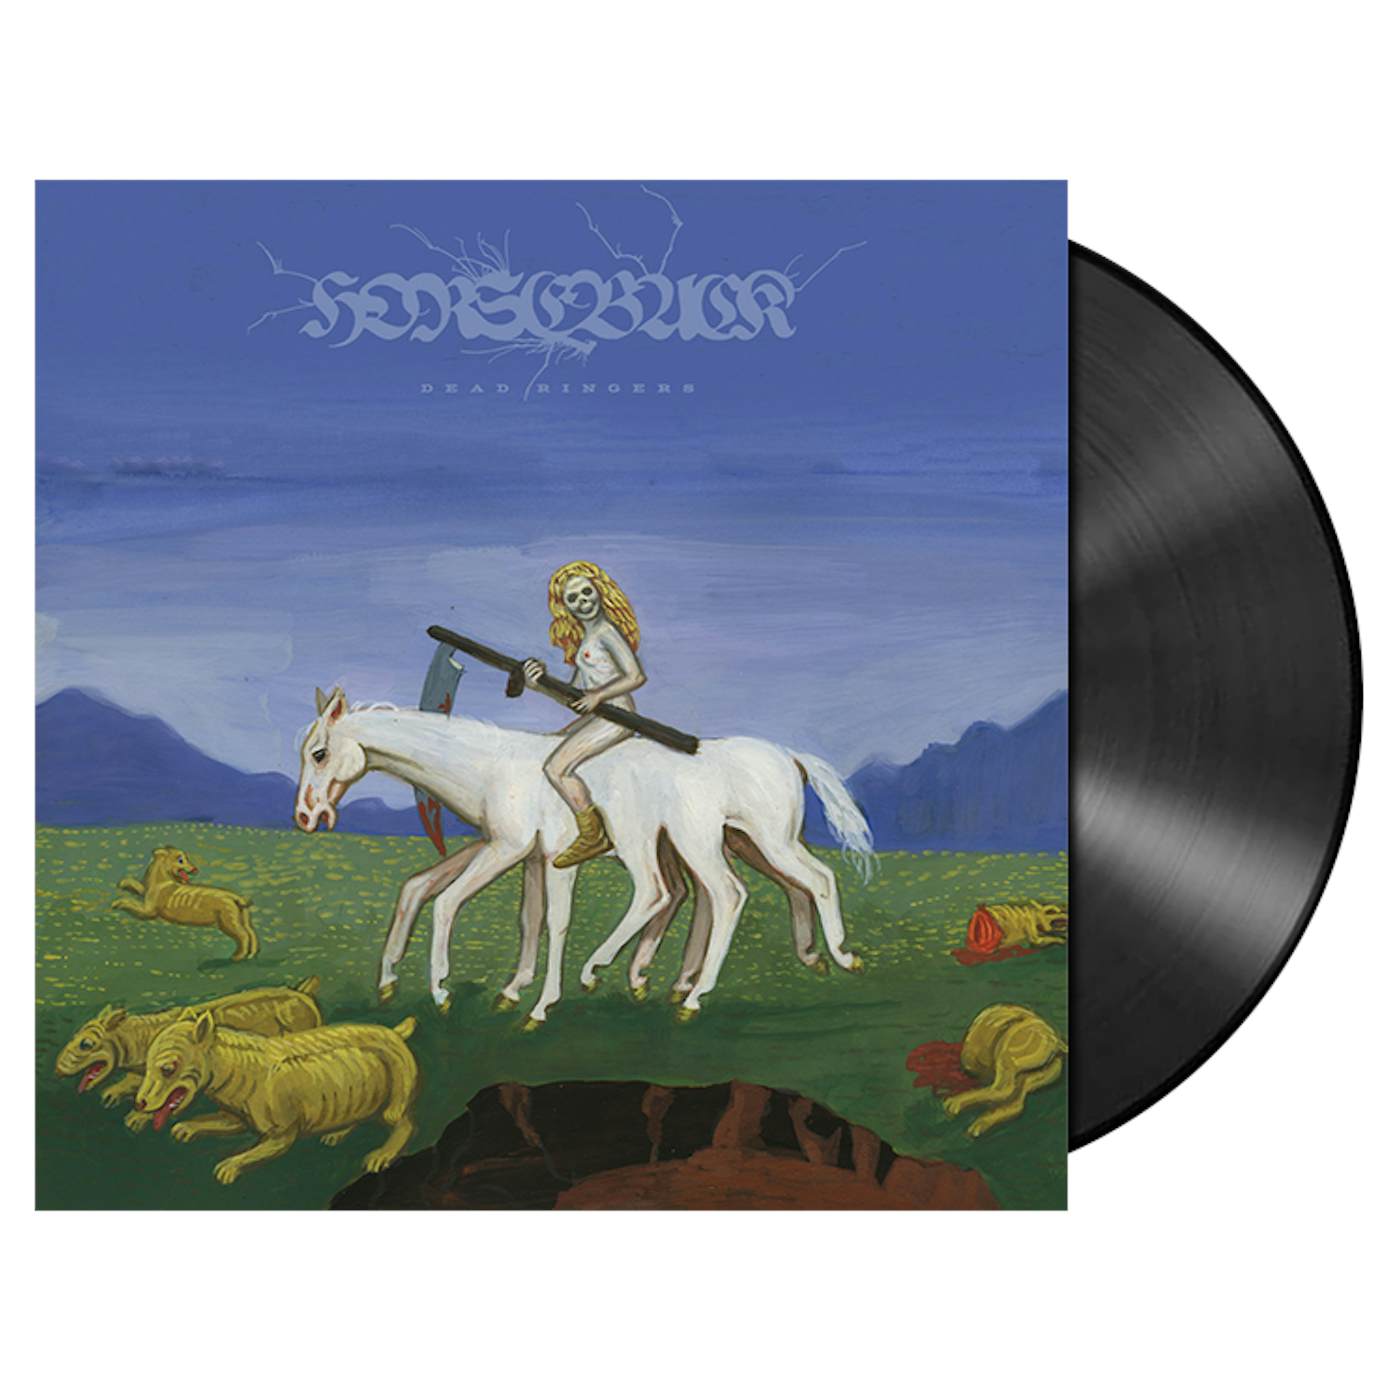 HORSEBACK - 'Dead Ringers' 2xLP (Vinyl)